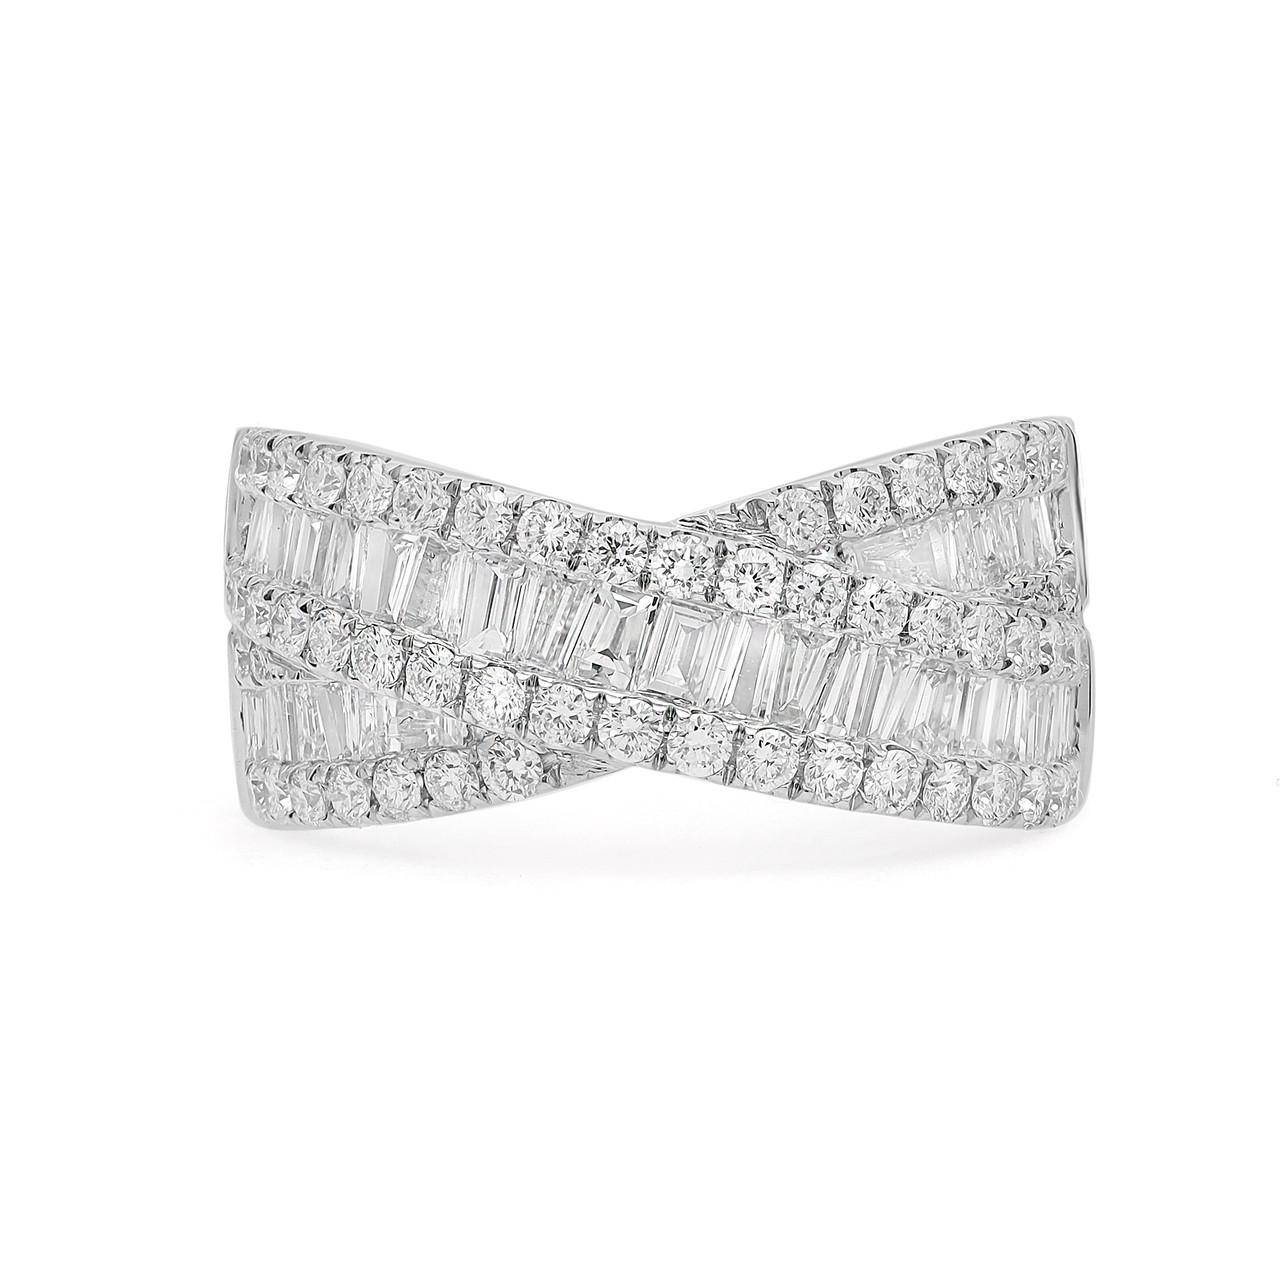 Erhöhen Sie Ihren Stil mit dem atemberaubenden Glanz unseres 2,06 Karat runden und Baguette-Diamanten Crossover Fashion Ring in 18K Weißgold. Dieses bezaubernde Schmuckstück eignet sich für jeden Anlass und wurde entworfen, um Ihre Liebe auf